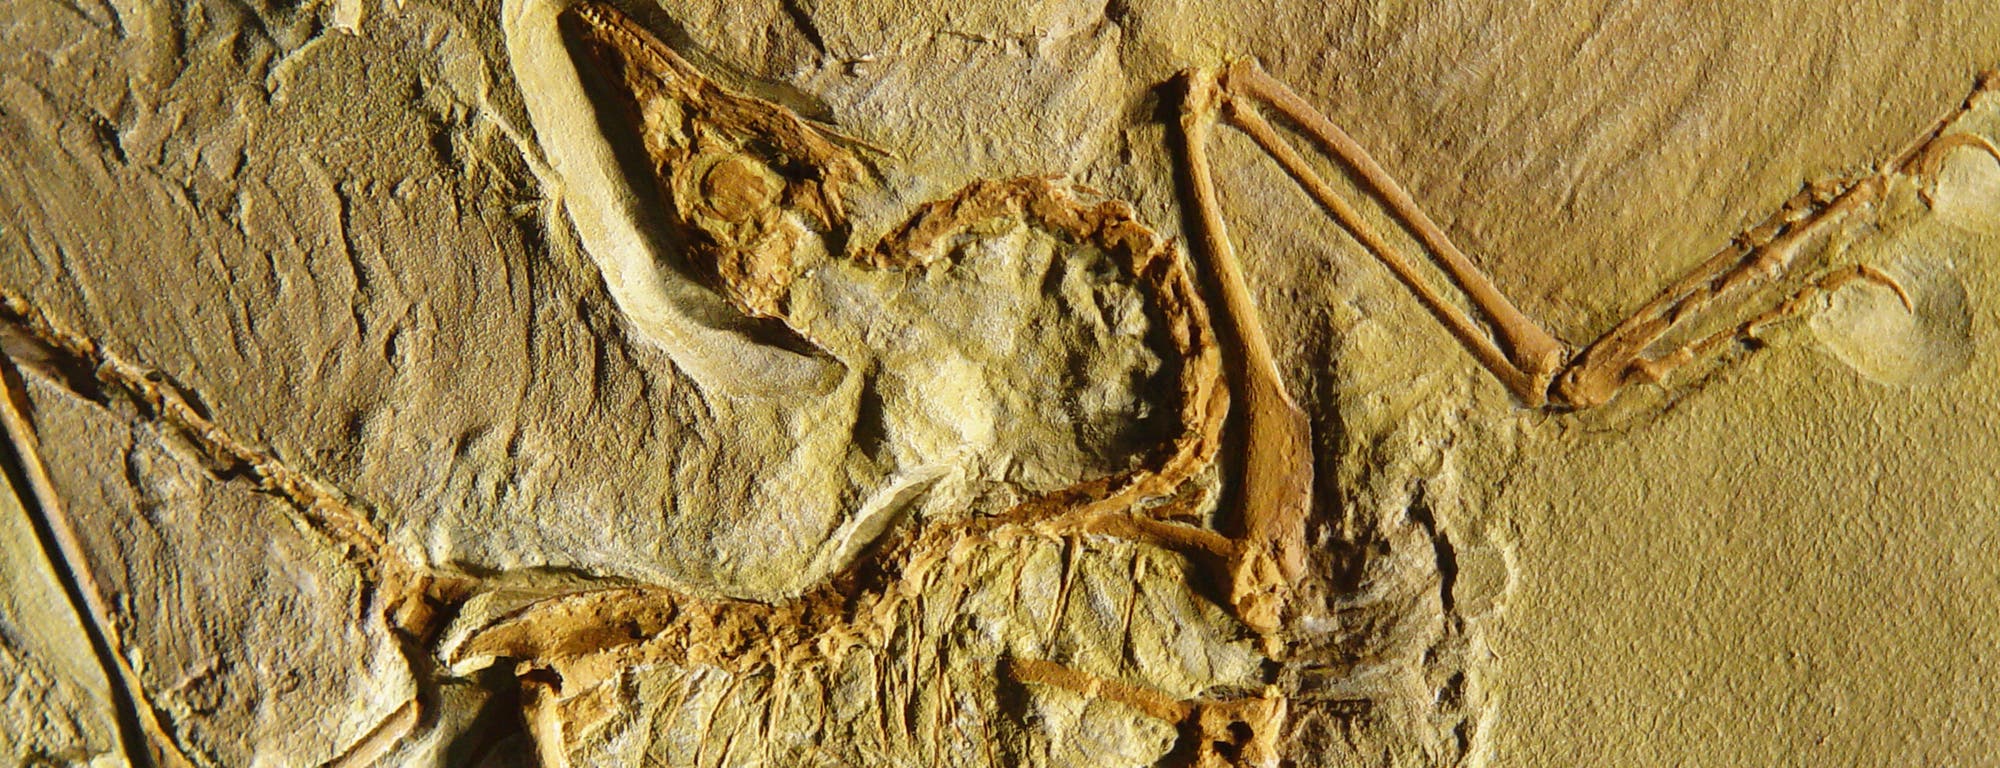 Archaeopteryx – der Urahn aller Vögel?